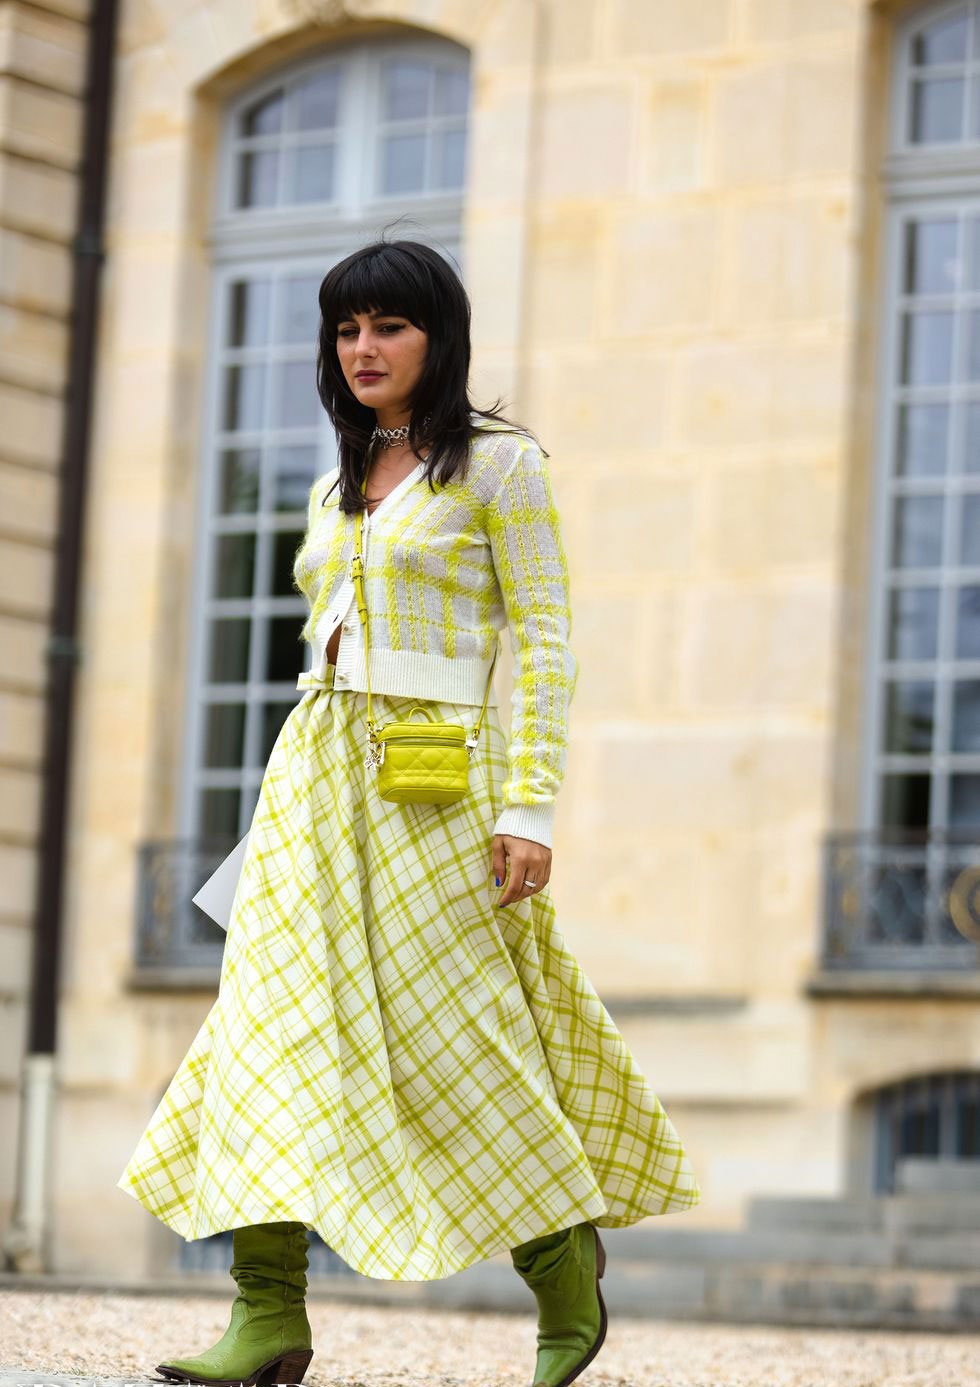 María Bernad nổi bật với set đồ họa tiết màu vàng và xanh mạ. Cô tạo điểm nhấn cho outfit bằng chiếc túi Vanity Bag nổi bật trong BST phụ kiện Chanel 2021. Cái hay của một người biết 'chơi' với màu sắc chính là tạo sự hài hòa ngay cả khi xuất hiện với những bảng màu rực rỡ.